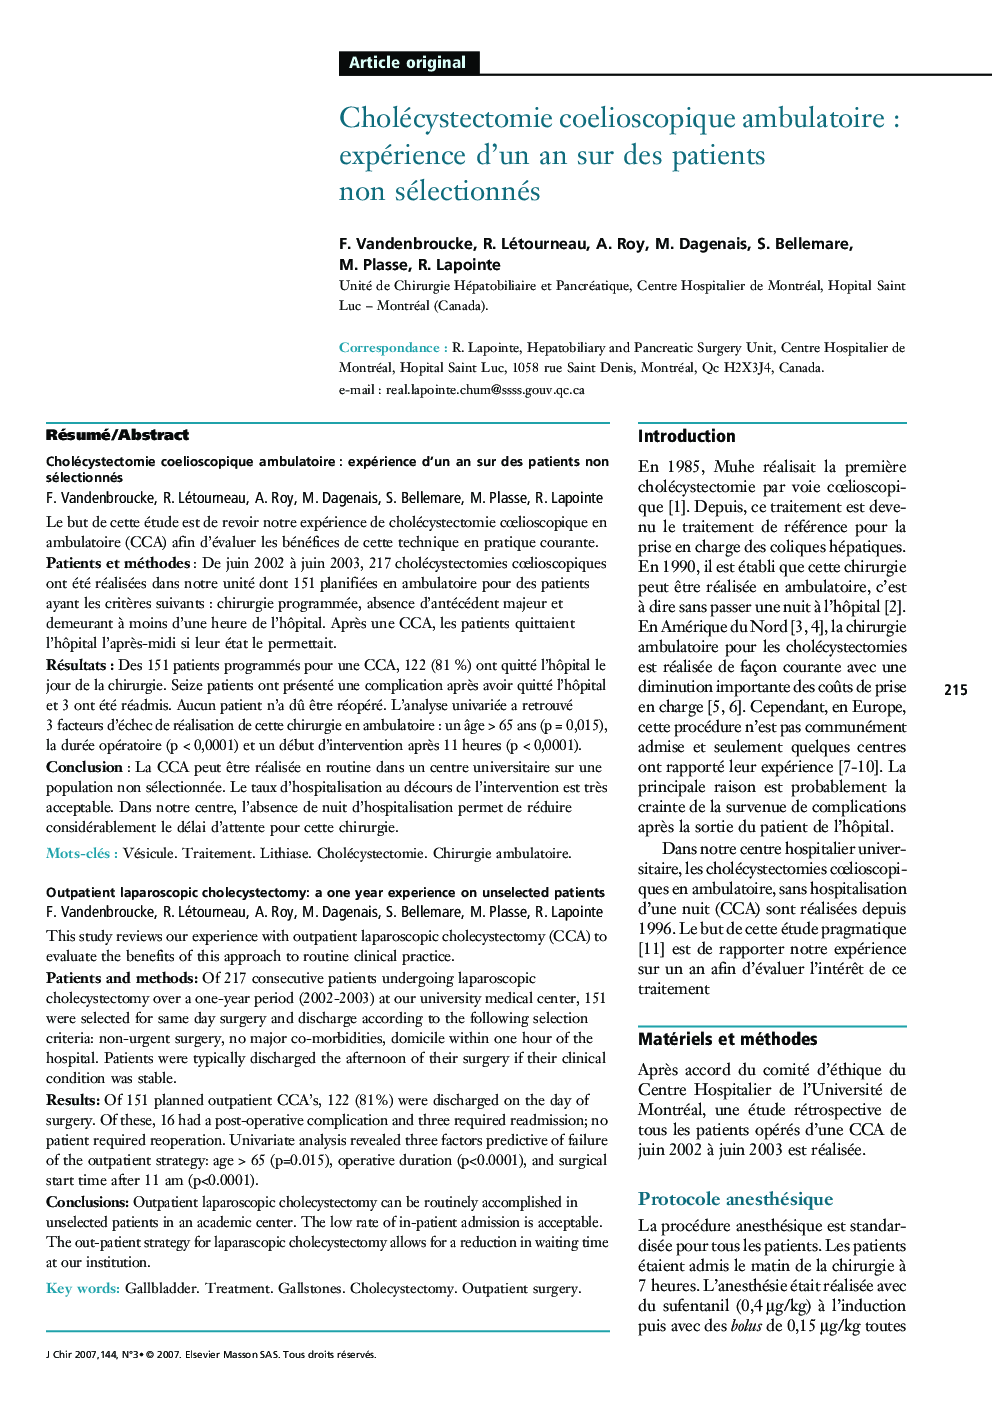 Cholécystectomie coelioscopique ambulatoire : expérience d'un an sur des patients non sélectionnés